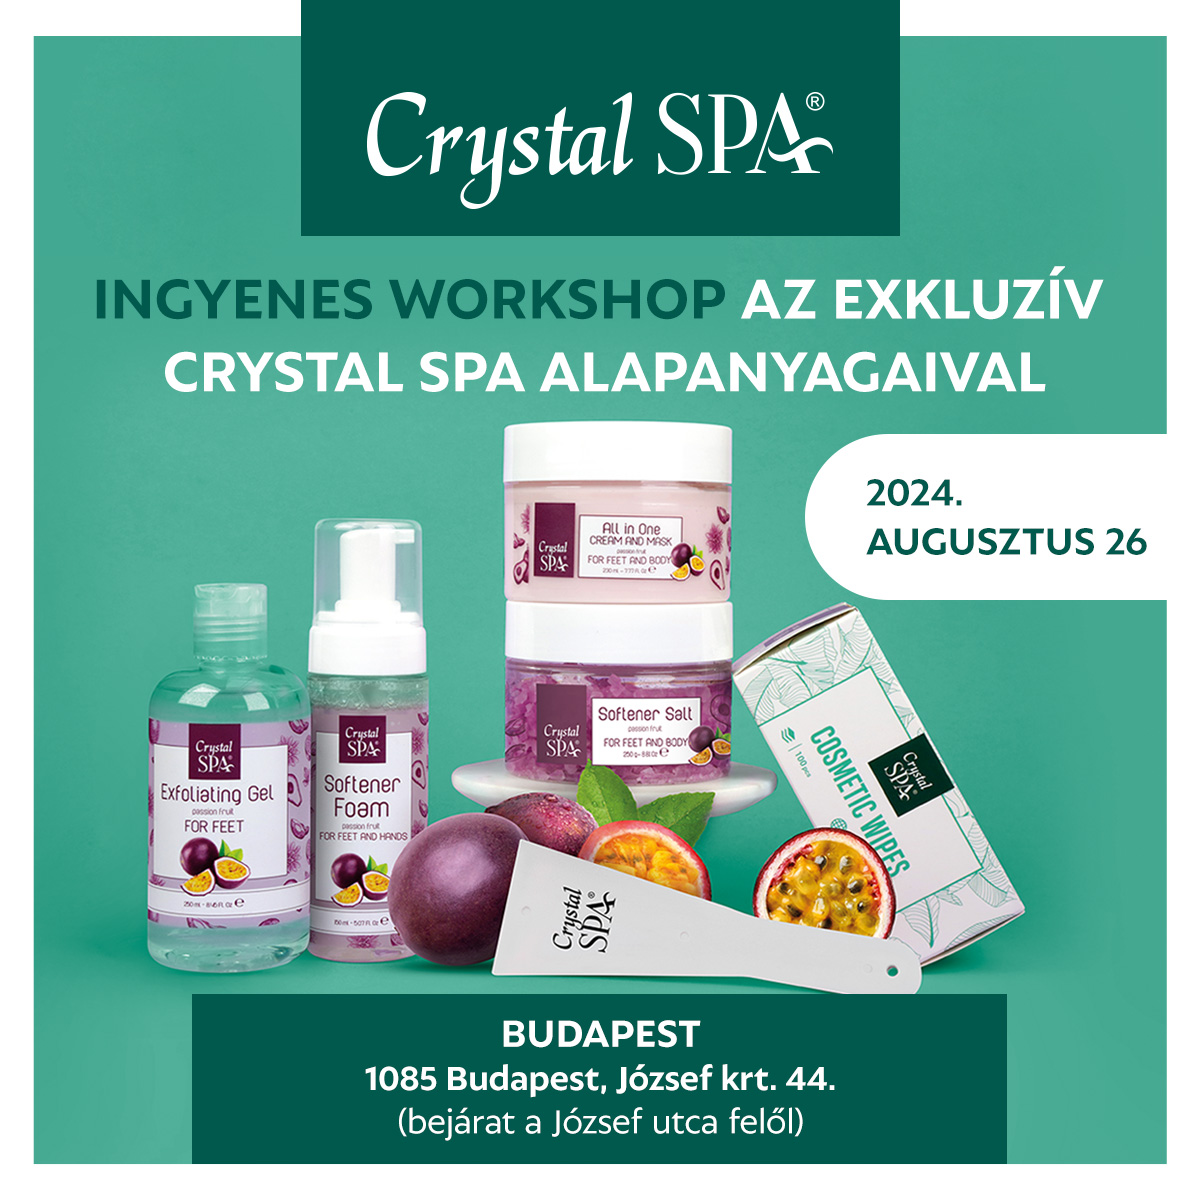 Ingyenes workshop az exkluzív Crystal Spa alapanyagaival